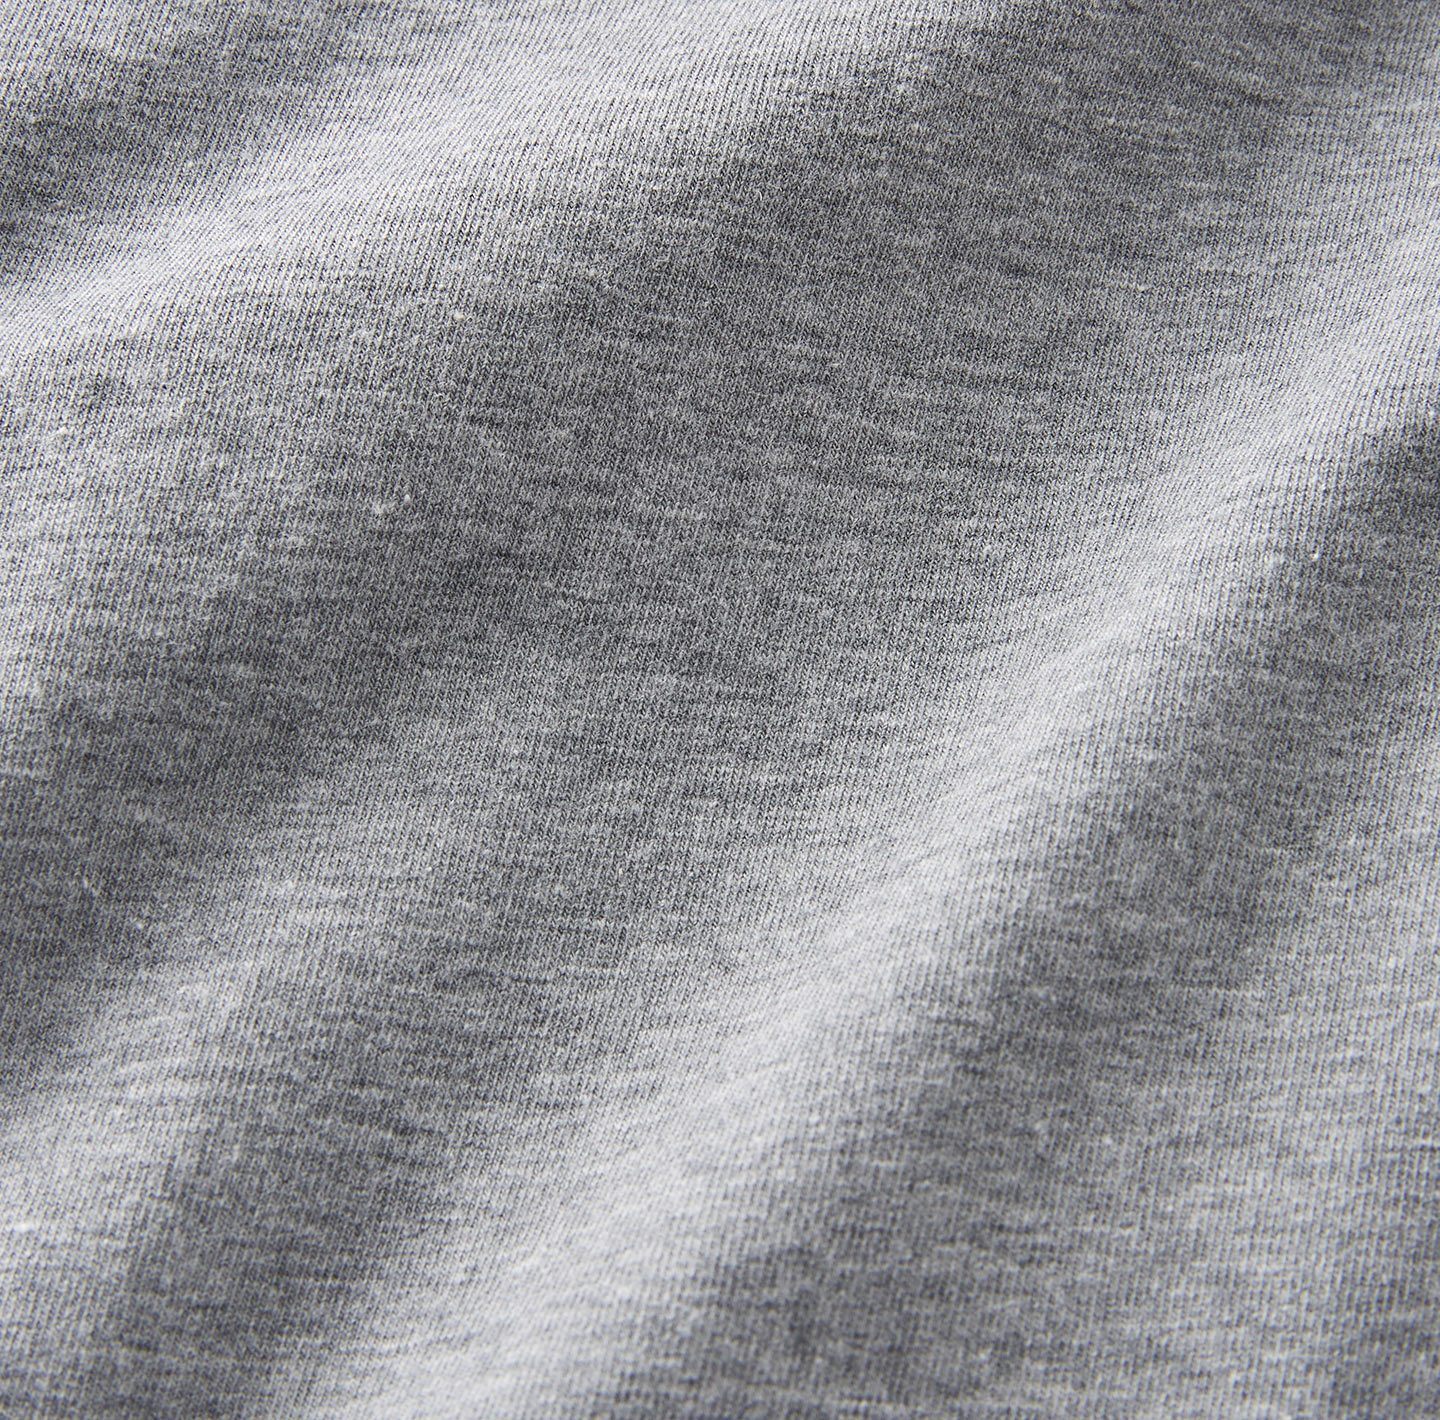 Monochrome organic cotton lounge pant, Le 31